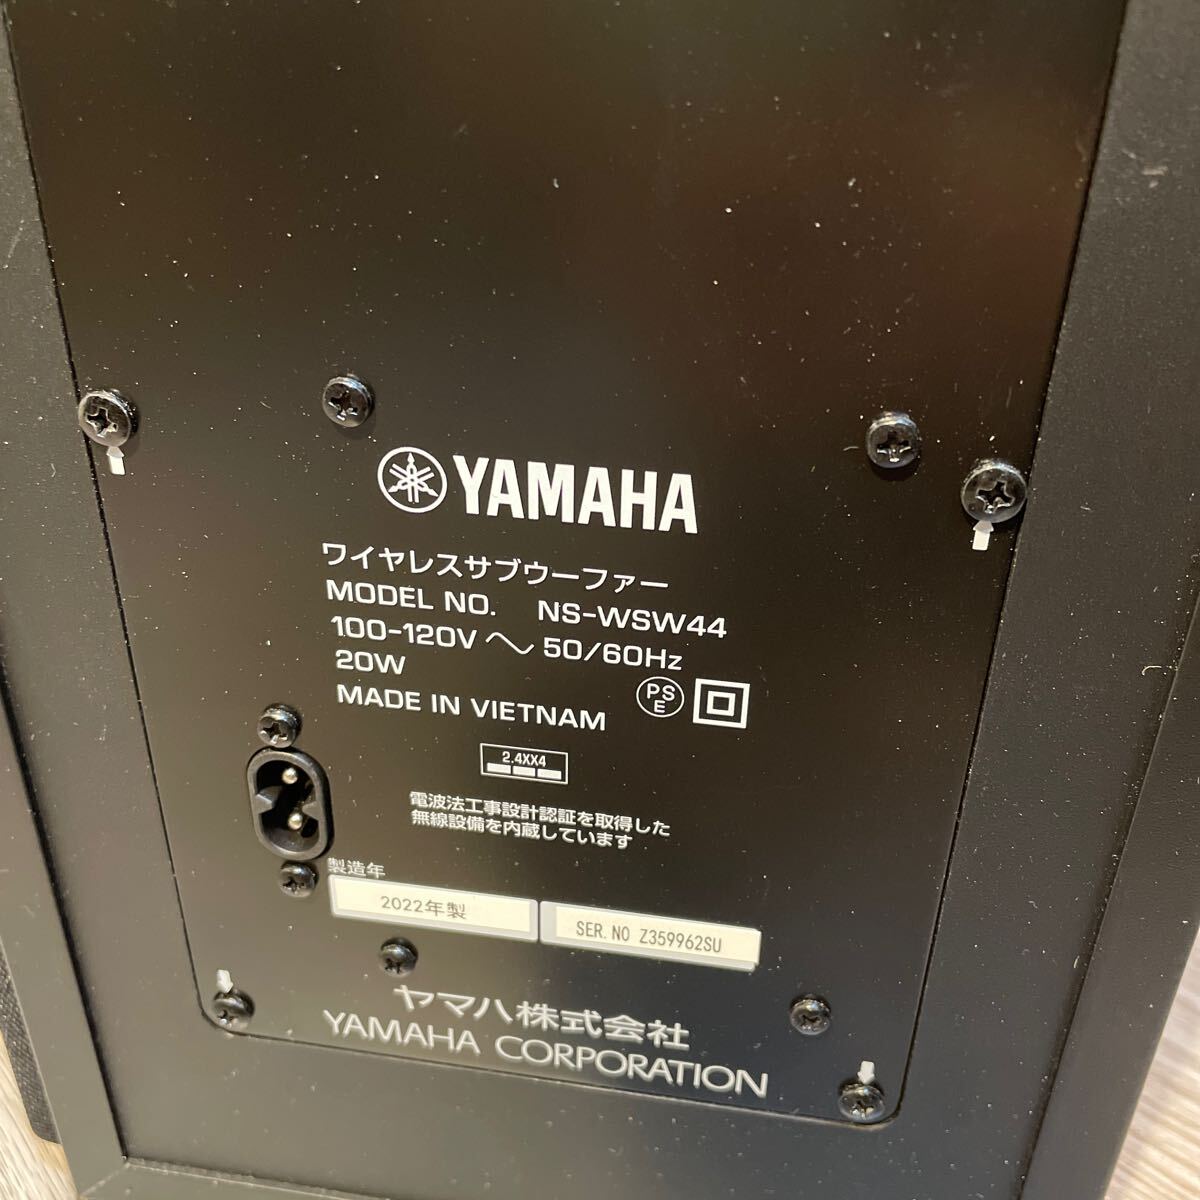 YAMAHA Yamaha беспроводной сабвуфер NS-WSW44 2022 год производства звук оборудование звуковая аппаратура * звук балка. продается отдельно 